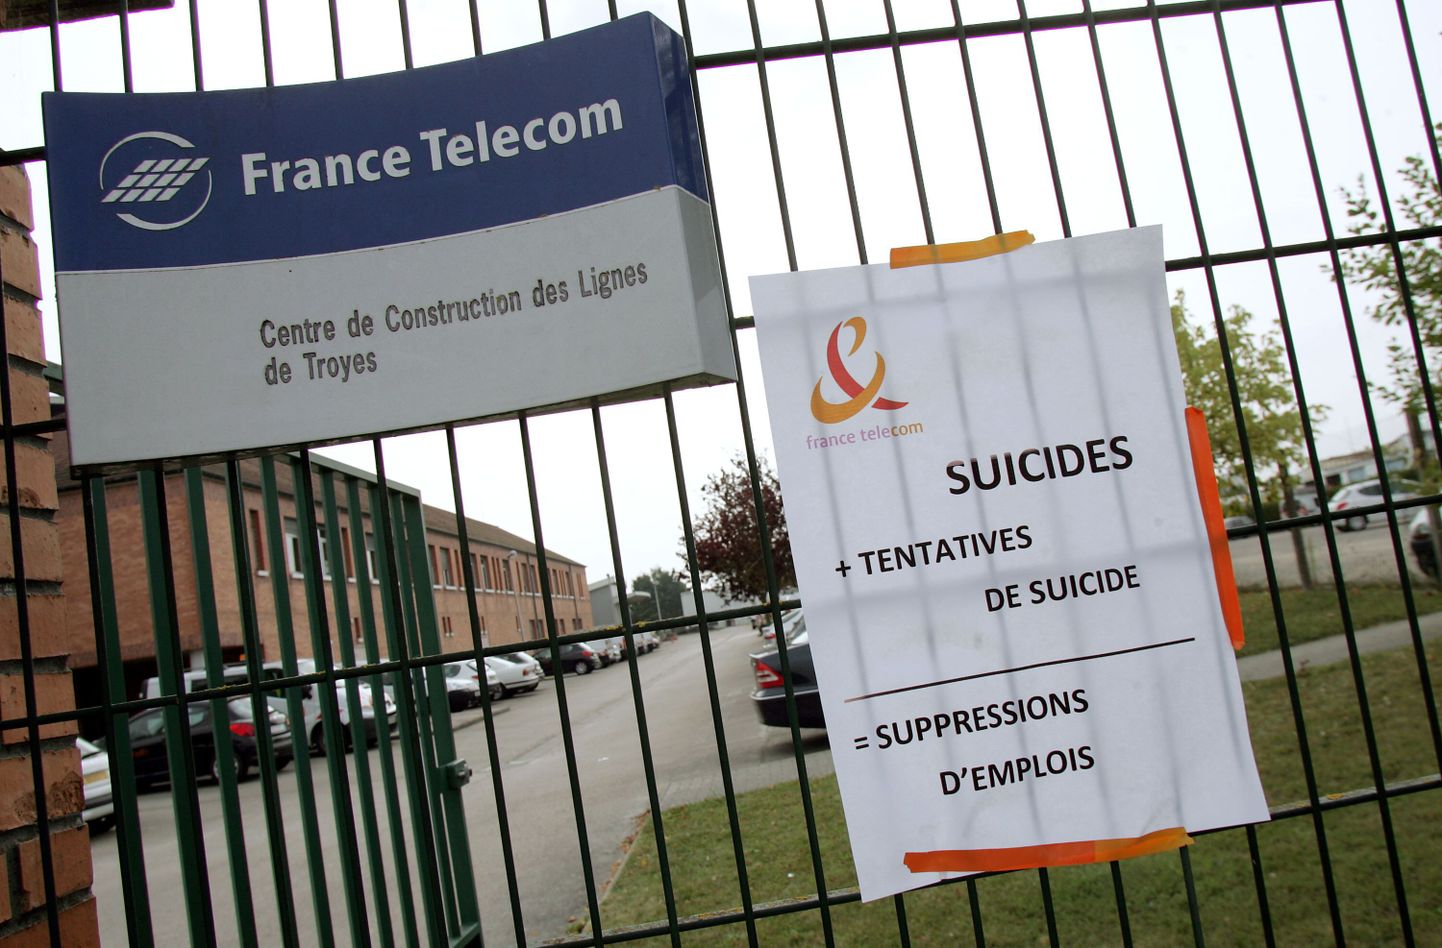 France Telecomi töötajate seas levib enesetapulaine